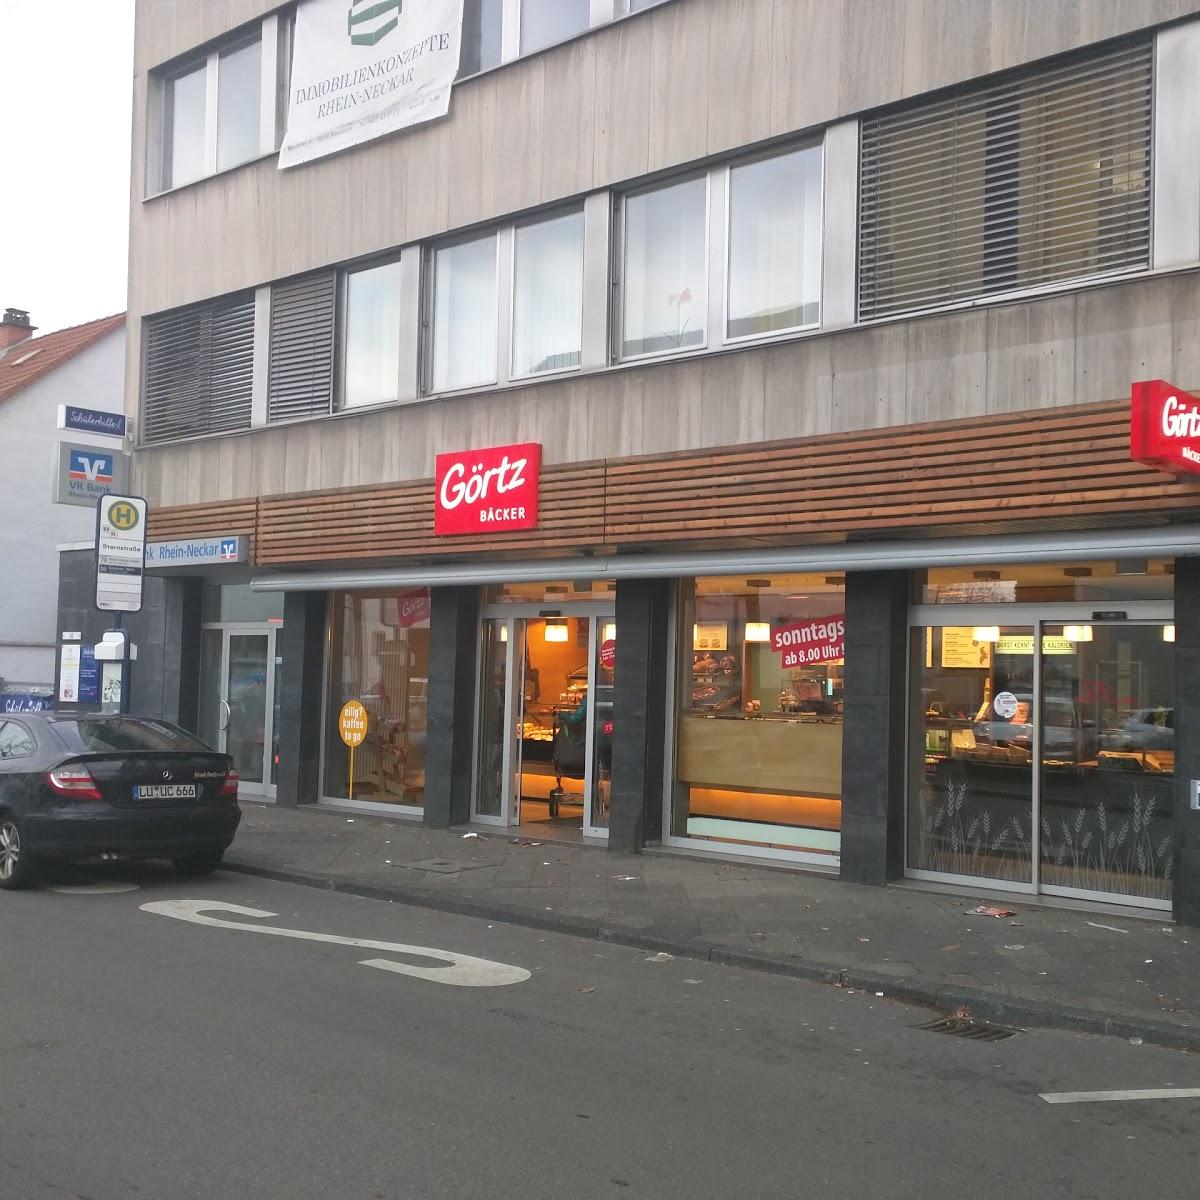 Restaurant "Bäcker Görtz" in Ludwigshafen am Rhein